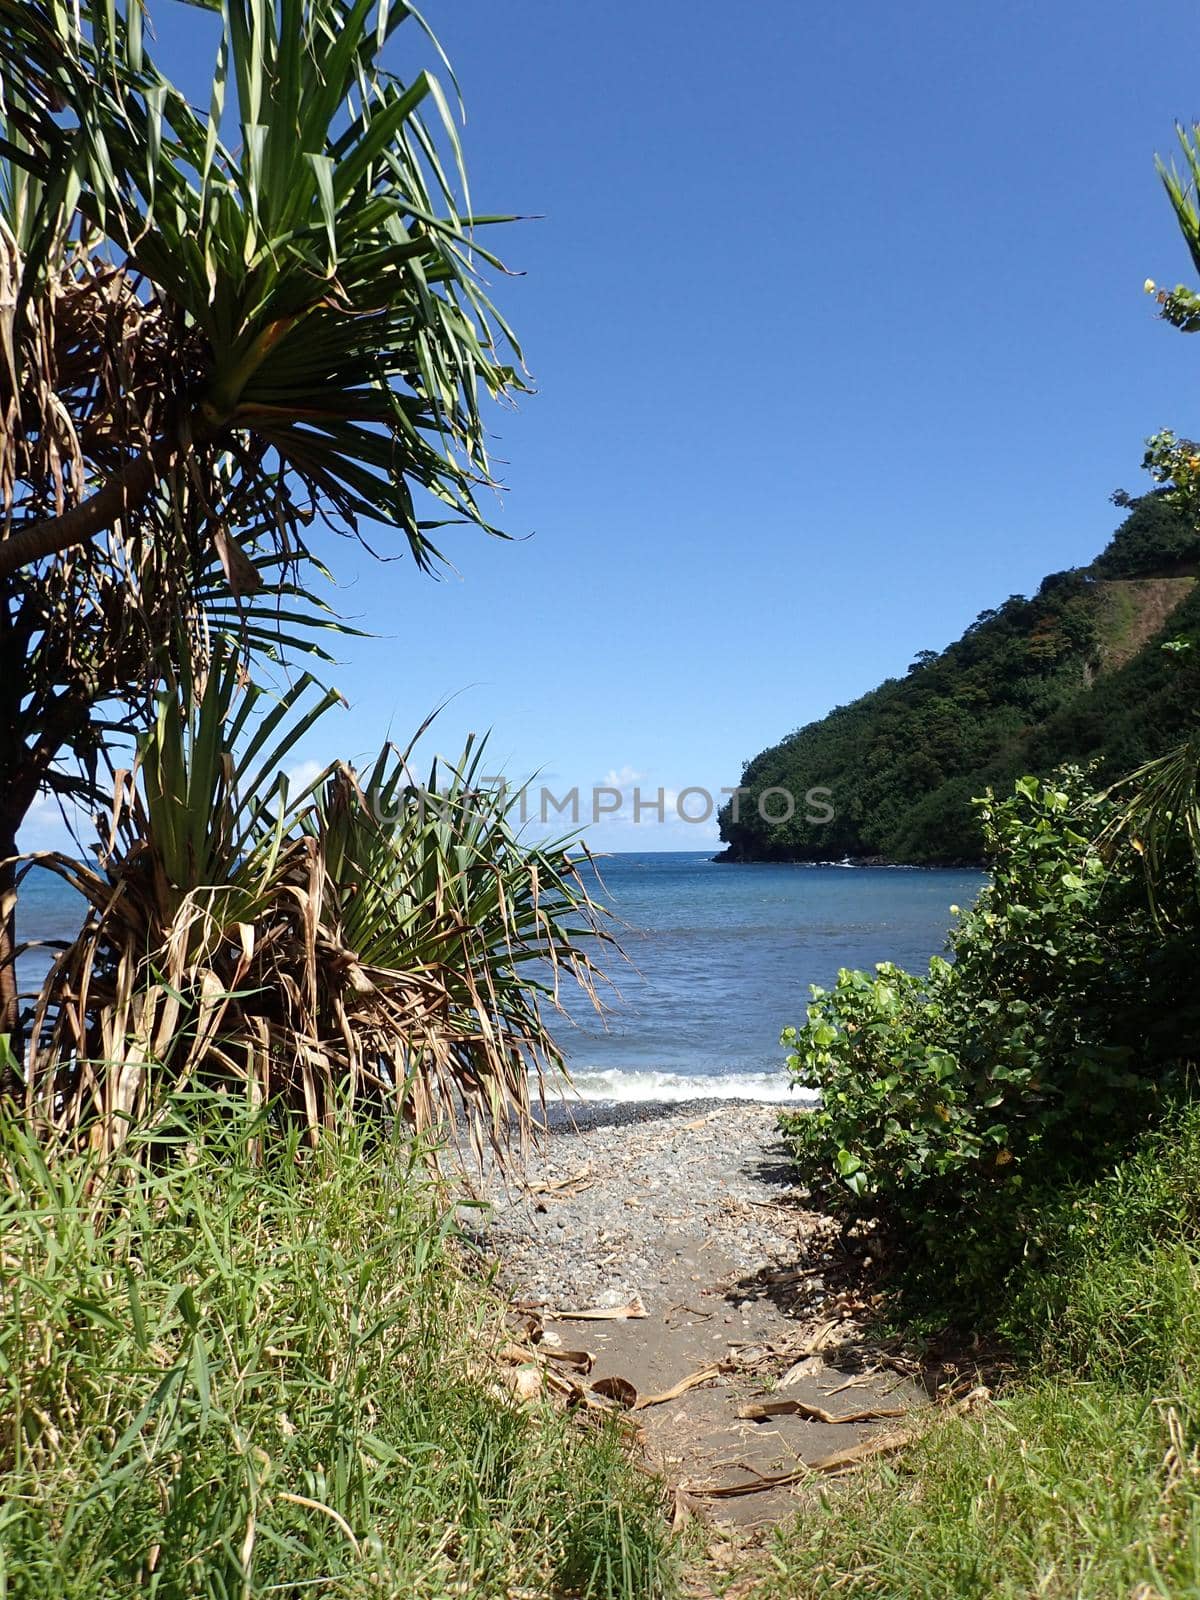 Path opens to black sand beach at Honomanu Park on the Road to Hana, Maui, Hawaii